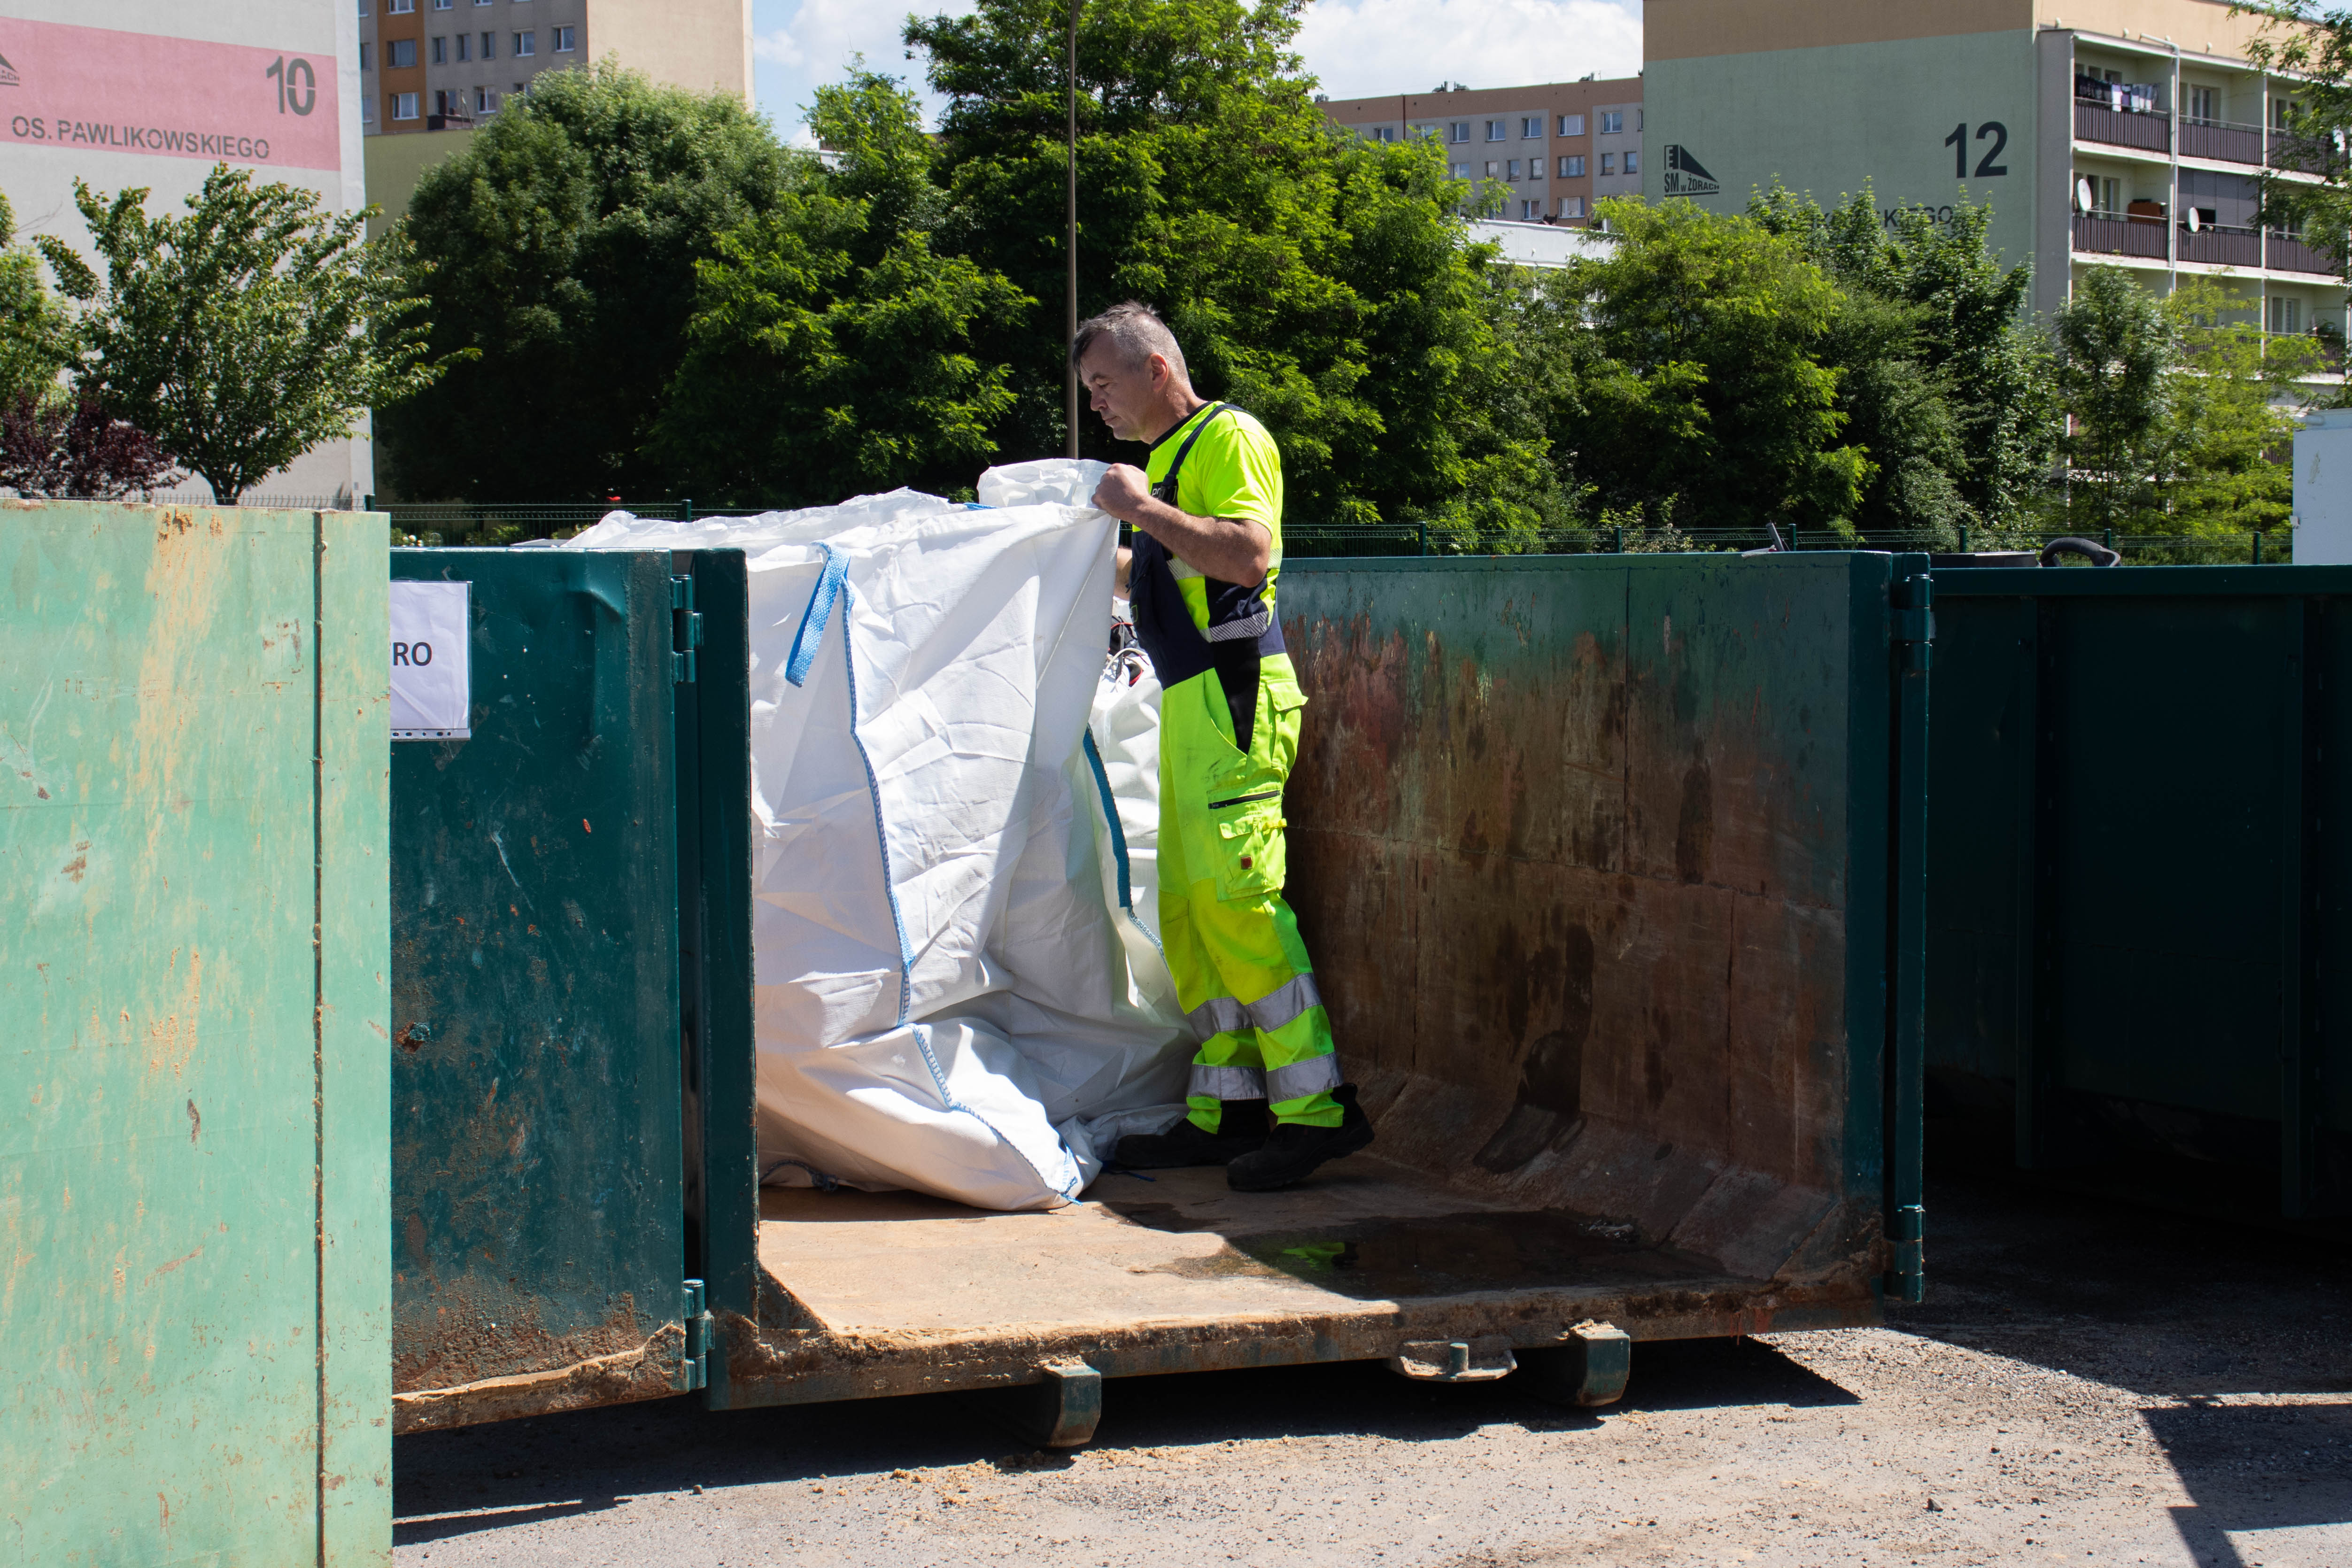 Akcja miała miejsce przy Punkcie Selektywnej Zbiórki Odpadów Komunalnych (PSZOK)